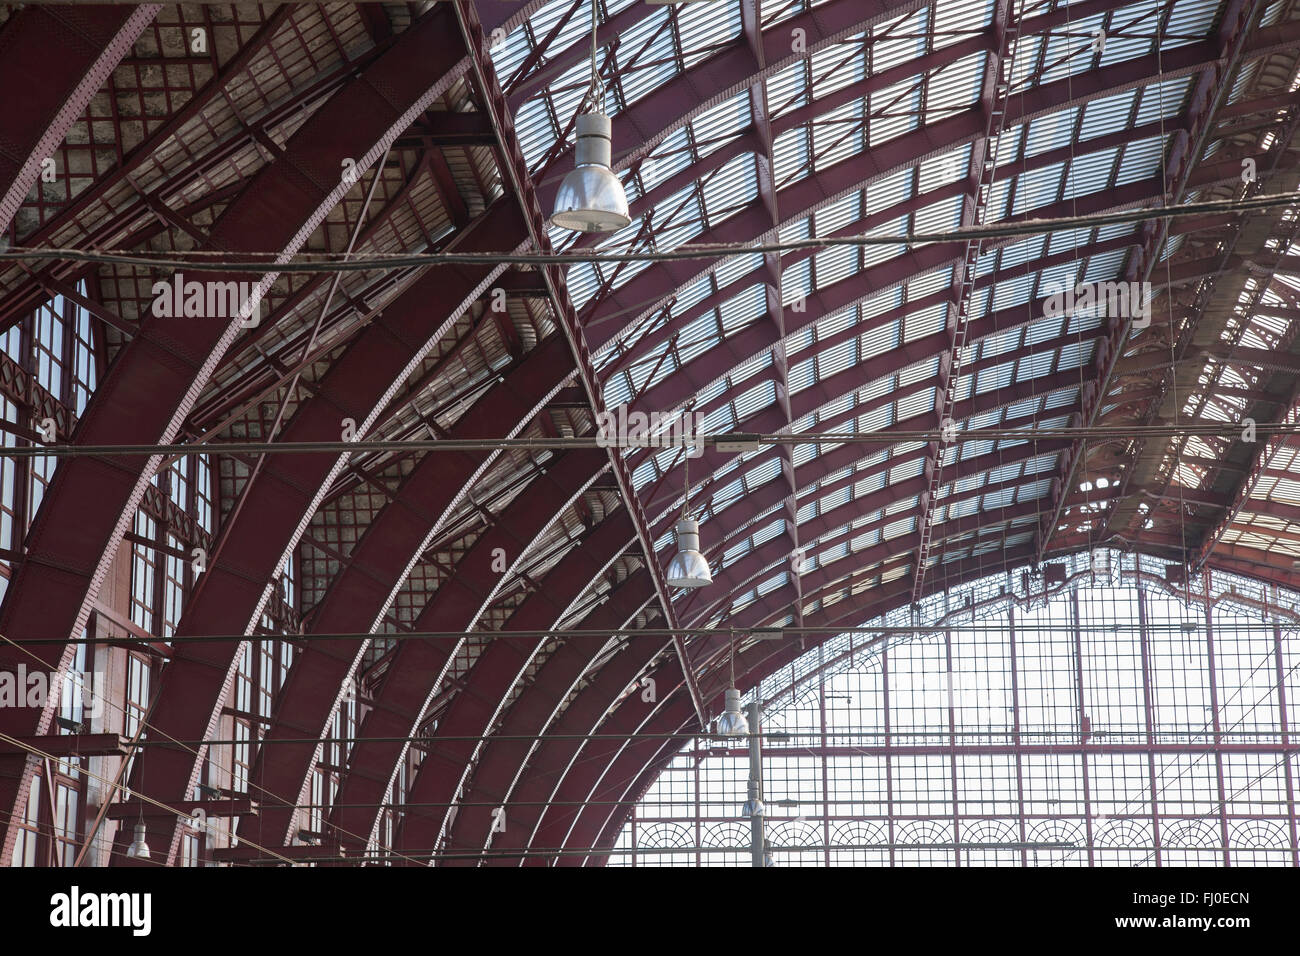 Bahnhof; Antwerpen - Antwerpen, Belgien Stockfoto